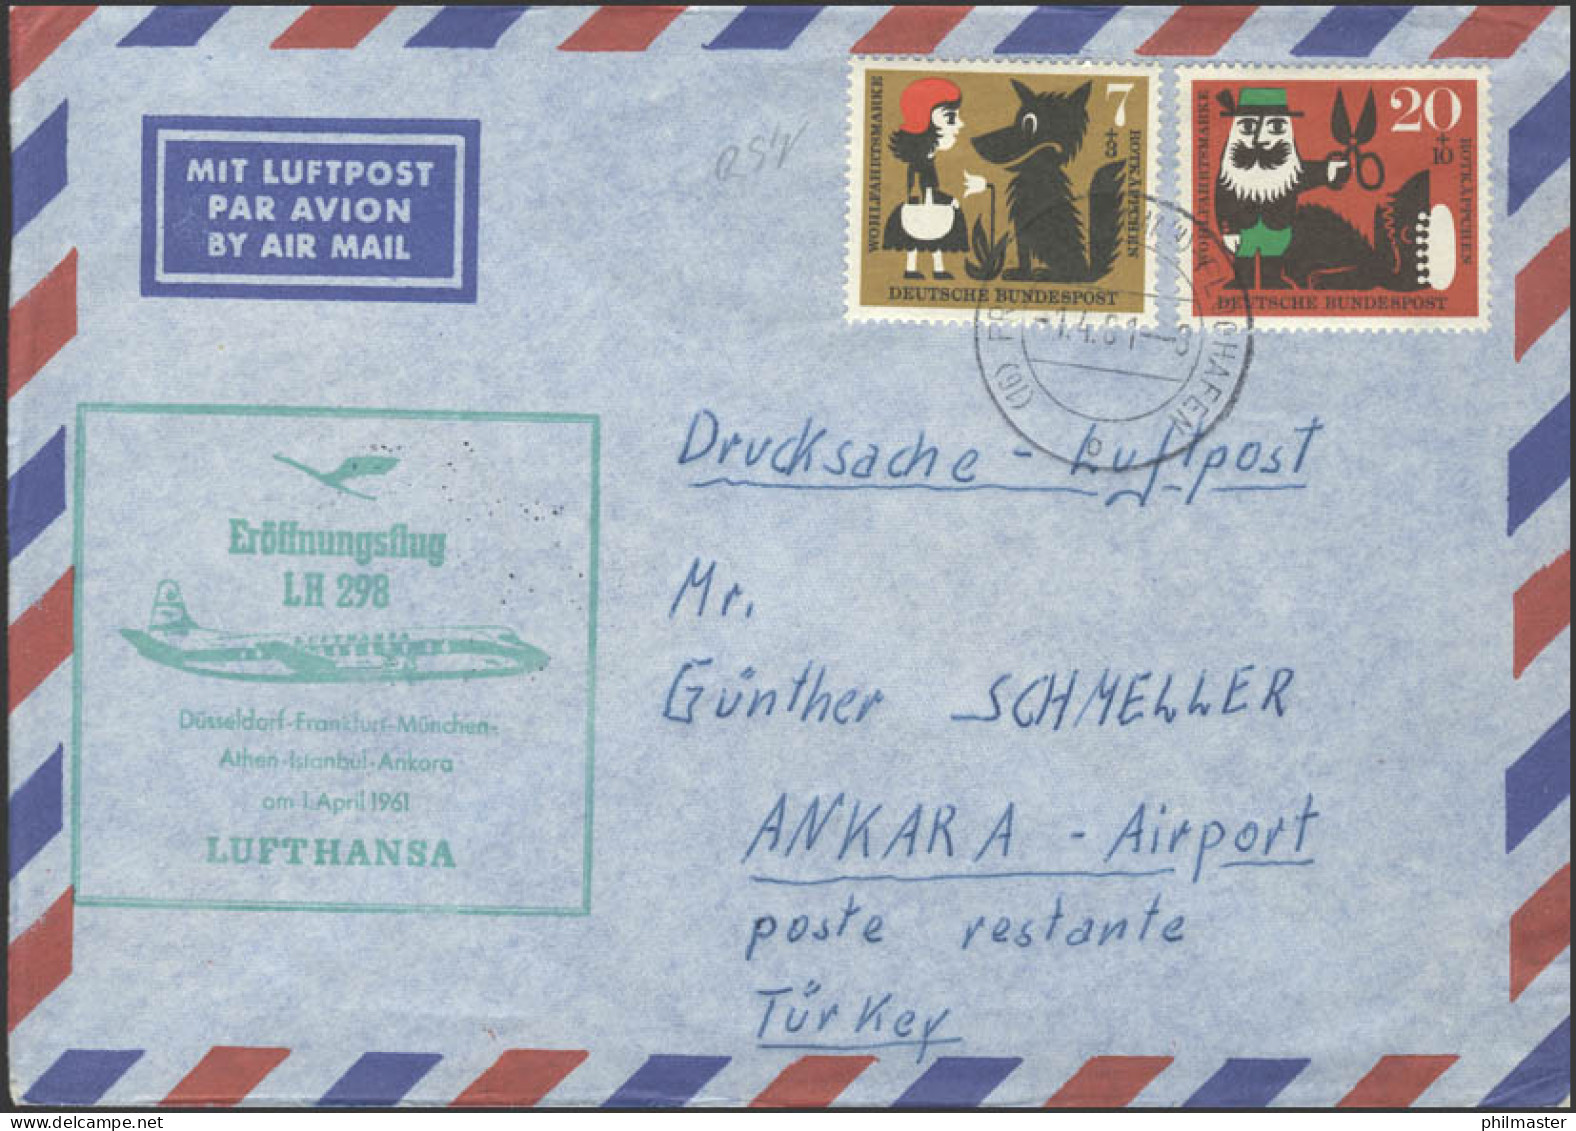 Eröffnungsflug LH 298 Düsseldorf-Frankfurt-Ankara Am 01.04.1961 - Sonstige (Luft)